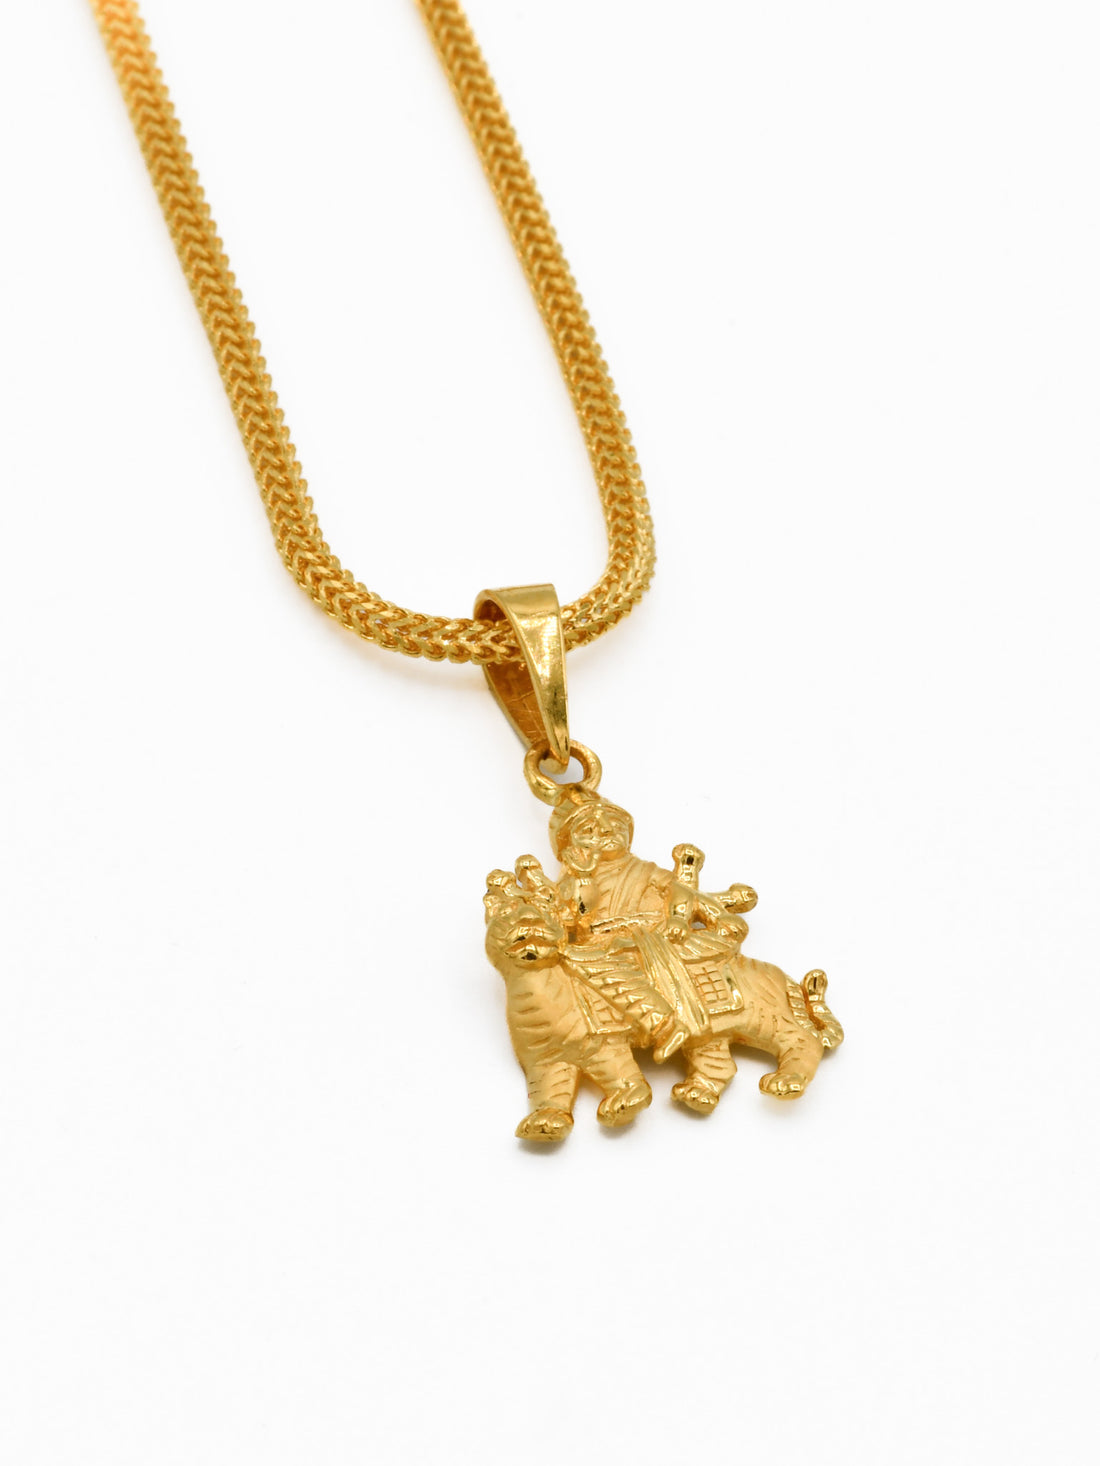 22ct Gold Ambe Mata Pendant - Roop Darshan